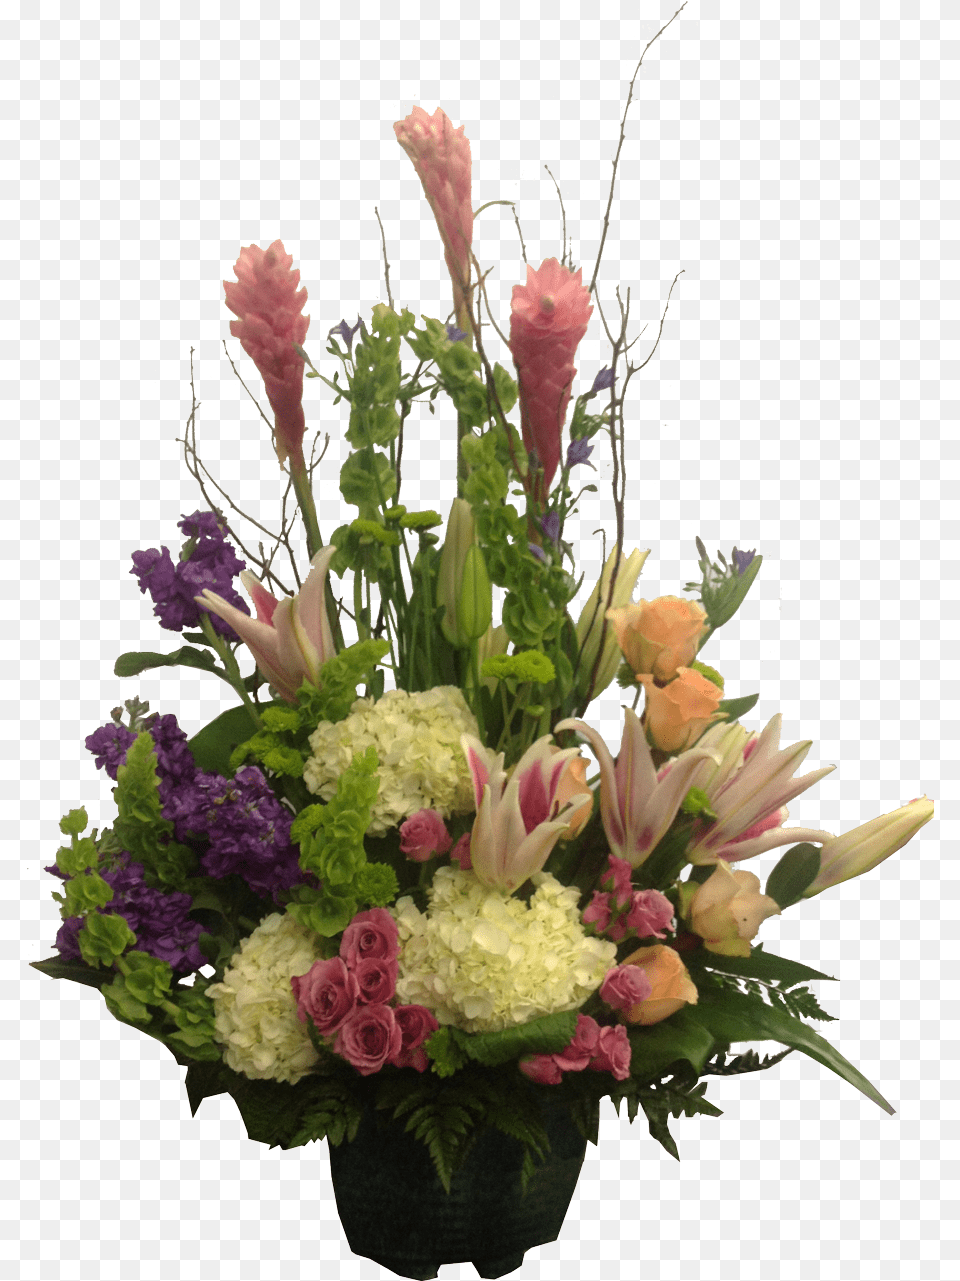 Infinity Romance Flower Arrangement Flora Funeral Tall Floral Arrangement, Art, Floral Design, Flower Arrangement, Flower Bouquet Png Image